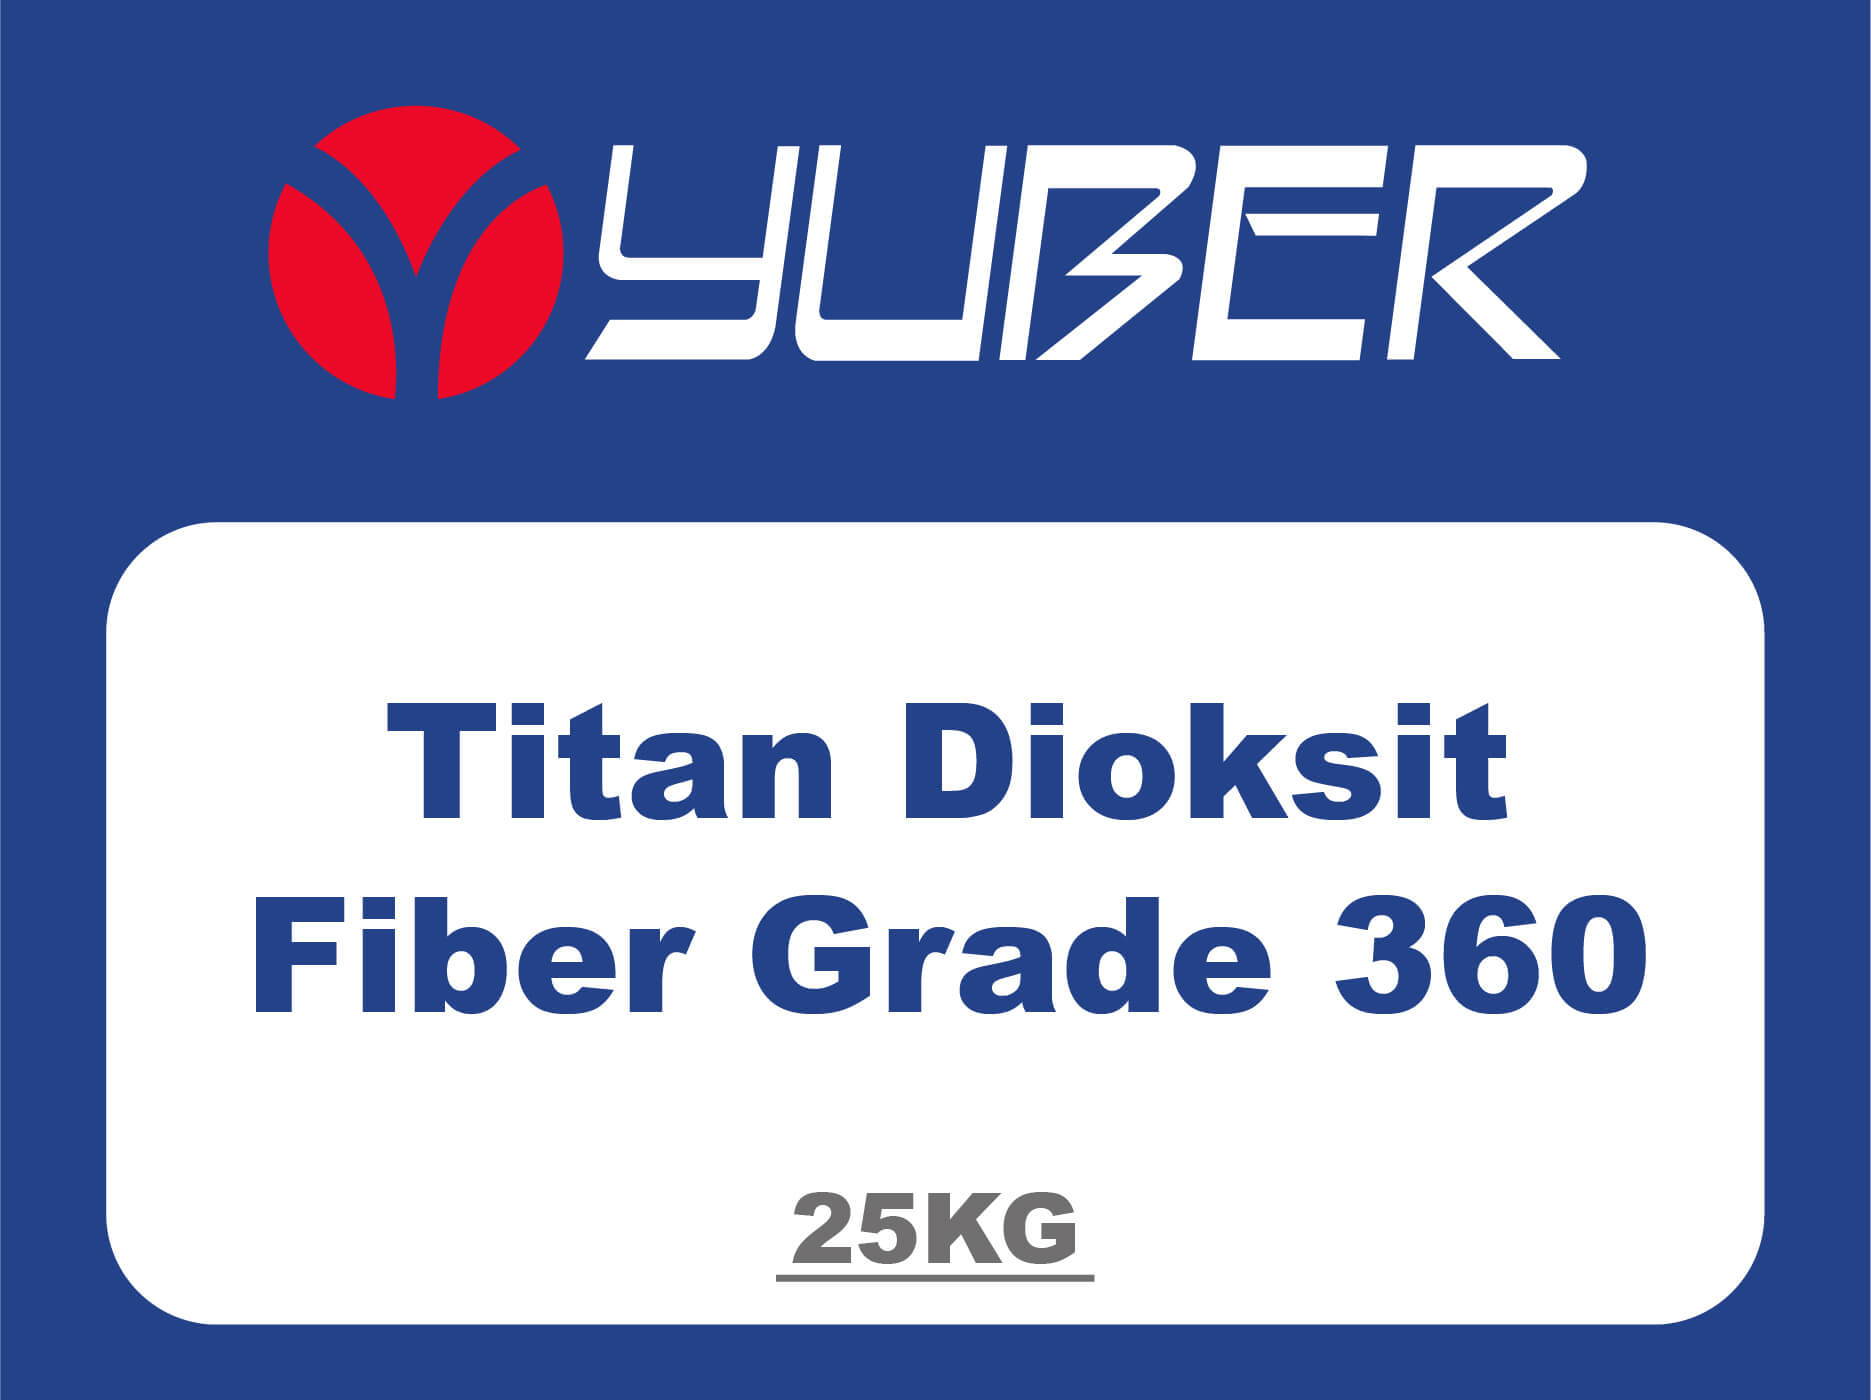 Titan Dioksit Fiber Grade 360 Yuber Kimya